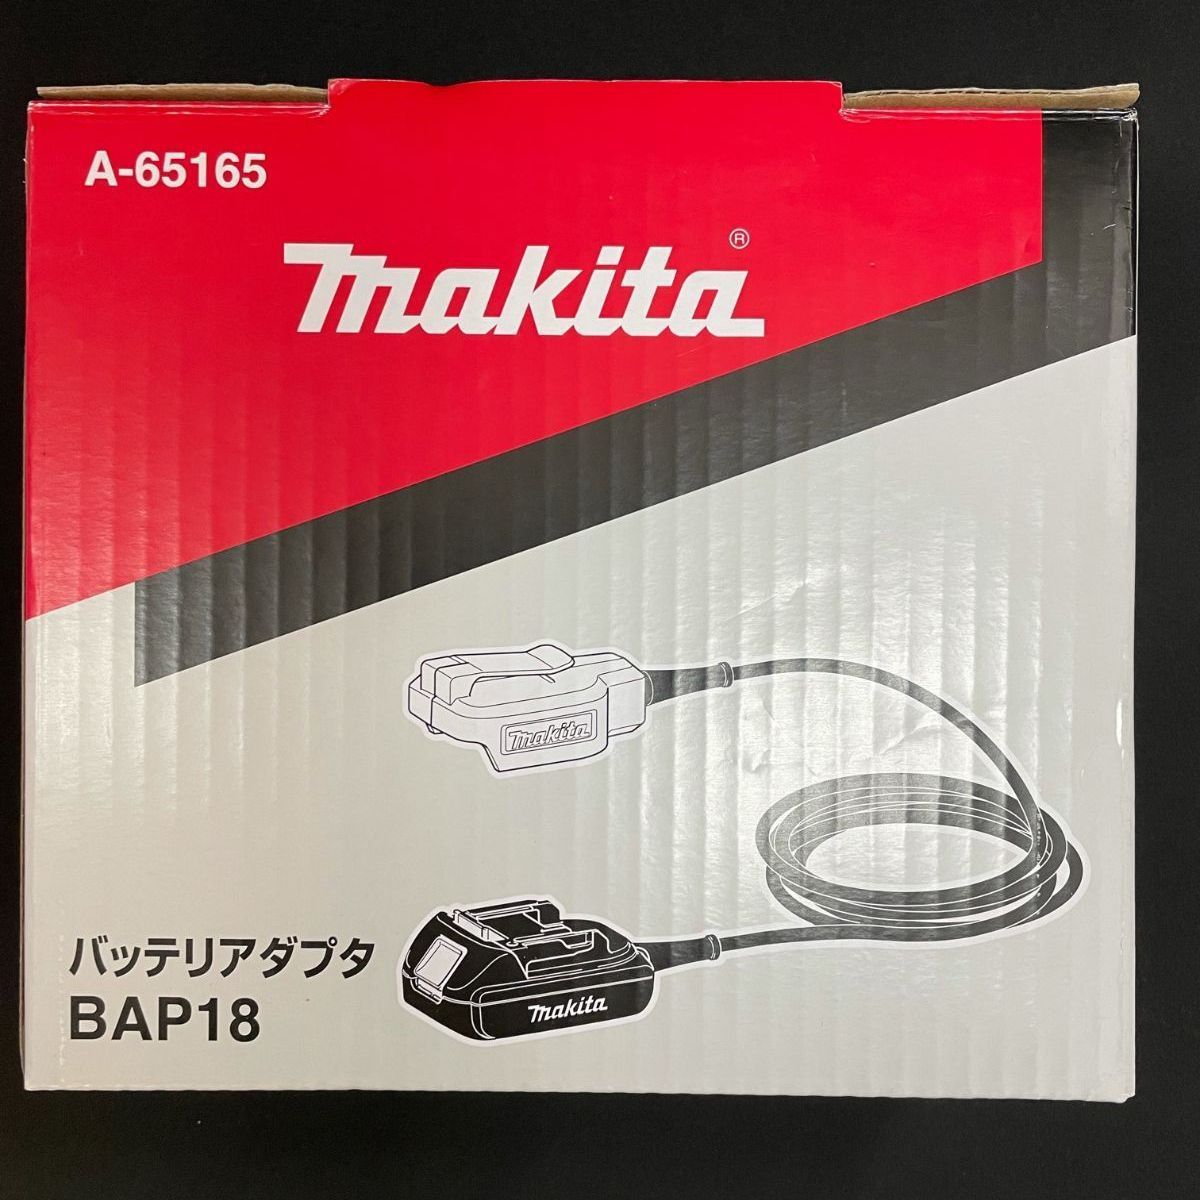 マキタ(Makita) バッテリアダプタBAP18 A-65165 - 工具